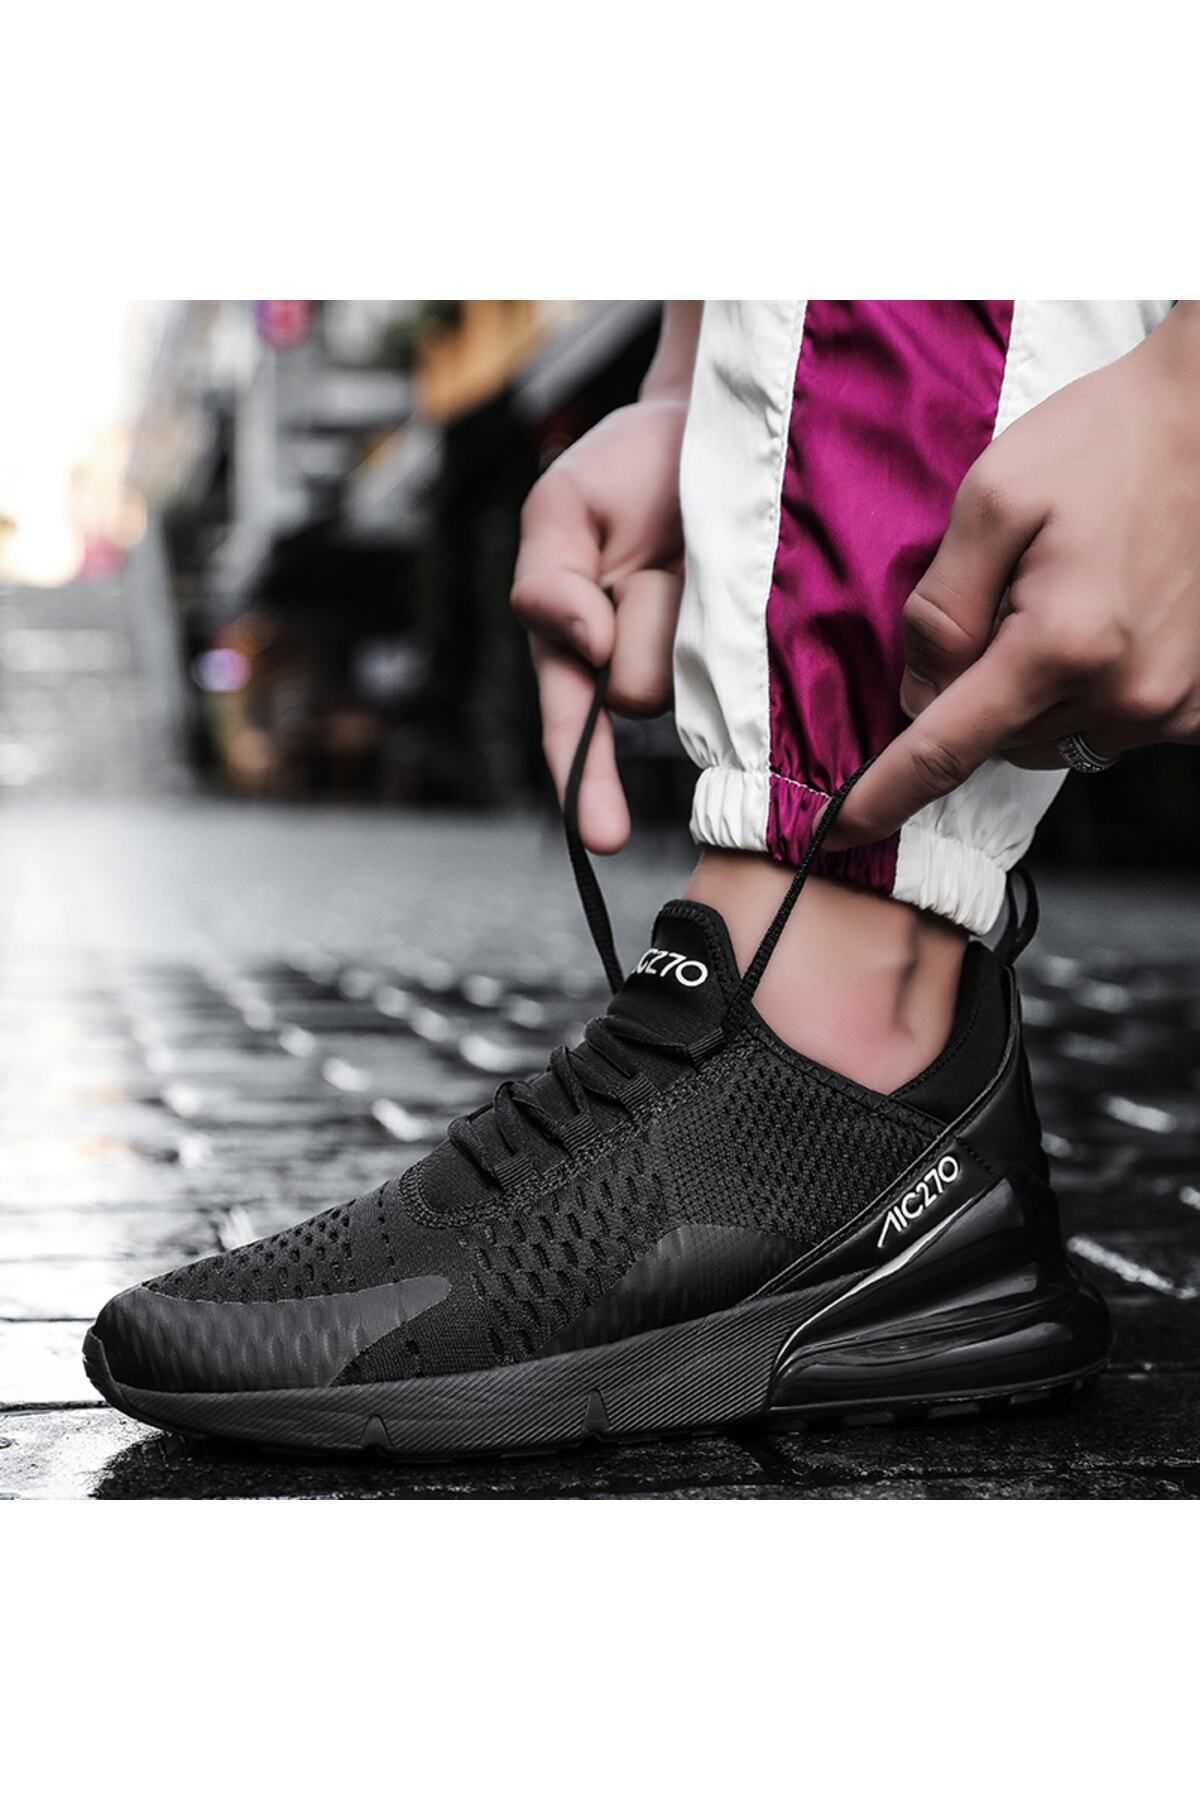 MAC MERO Unisex Günlük Yürüyüş Koşu Siyah - Siyah Air File Sneaker Spor Ayakkabı